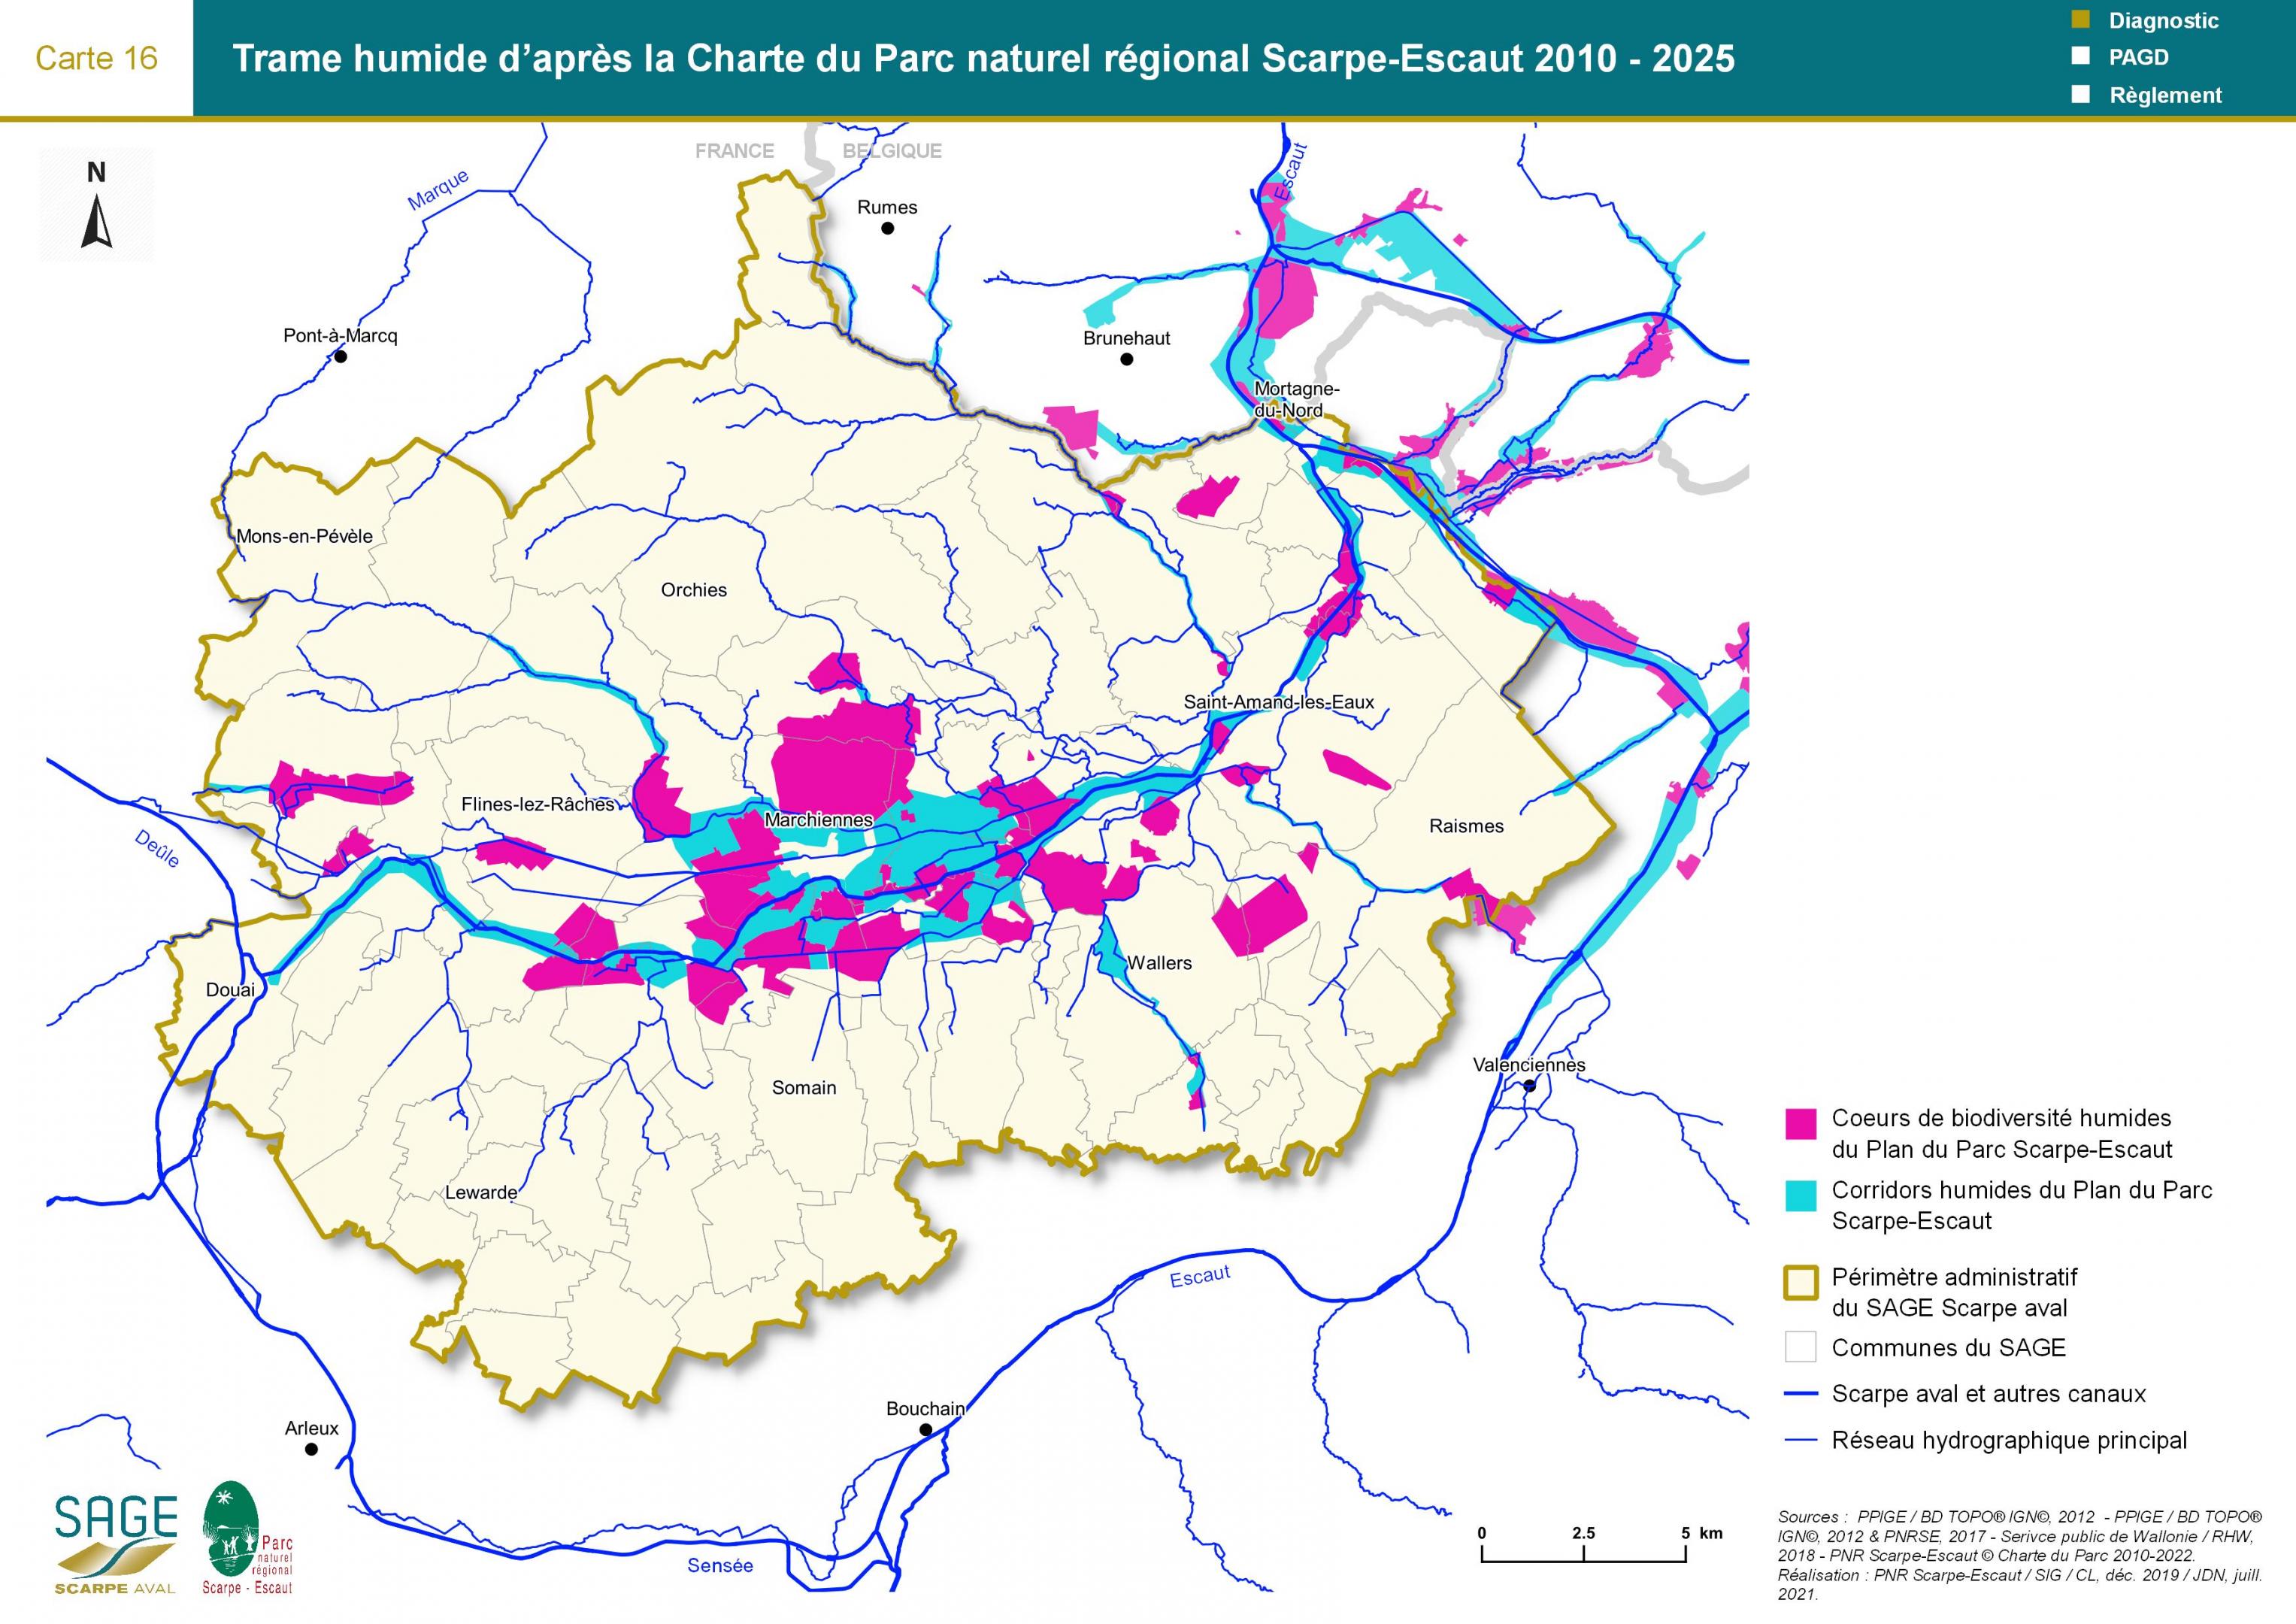 Etat des lieux - Carte 16 : Trame humide d’après la Charte du Parc naturel régional 